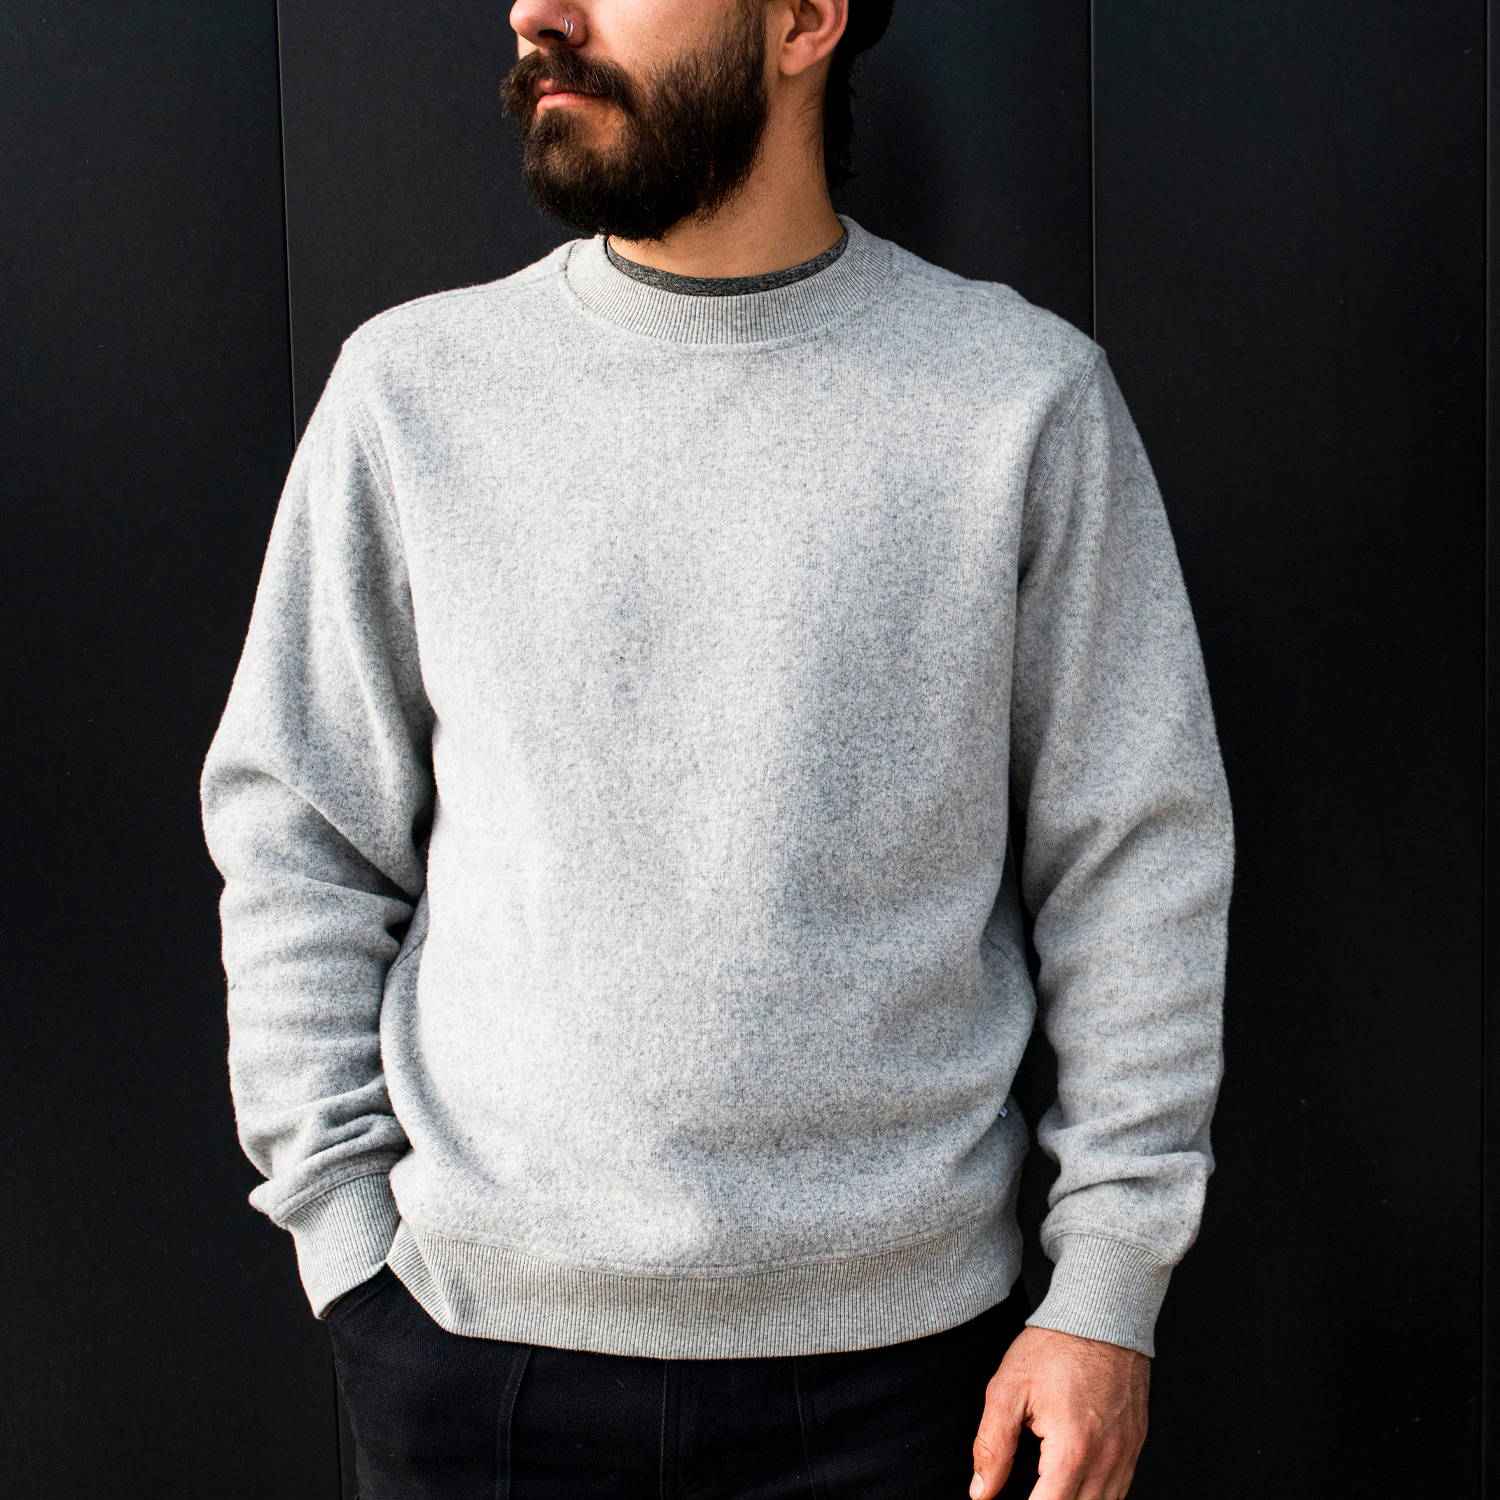  Men's Pullover Sweaters - Men's Pullover Sweaters